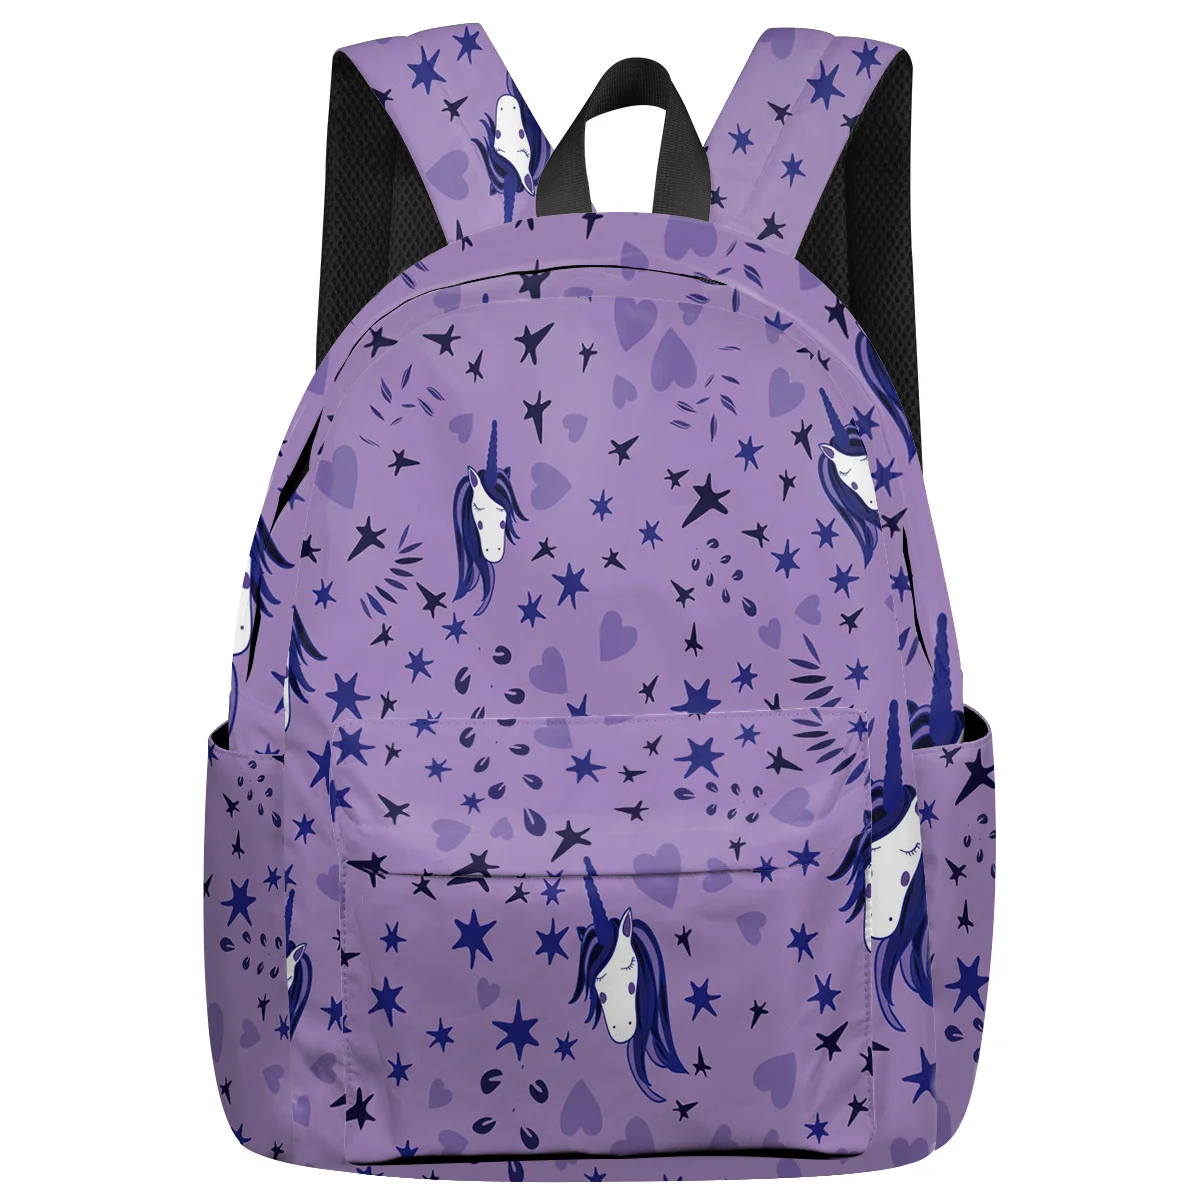 Фото WHEREISART Фиолетовый единорог и звезда рюкзаки Джордж васильтон день рождения